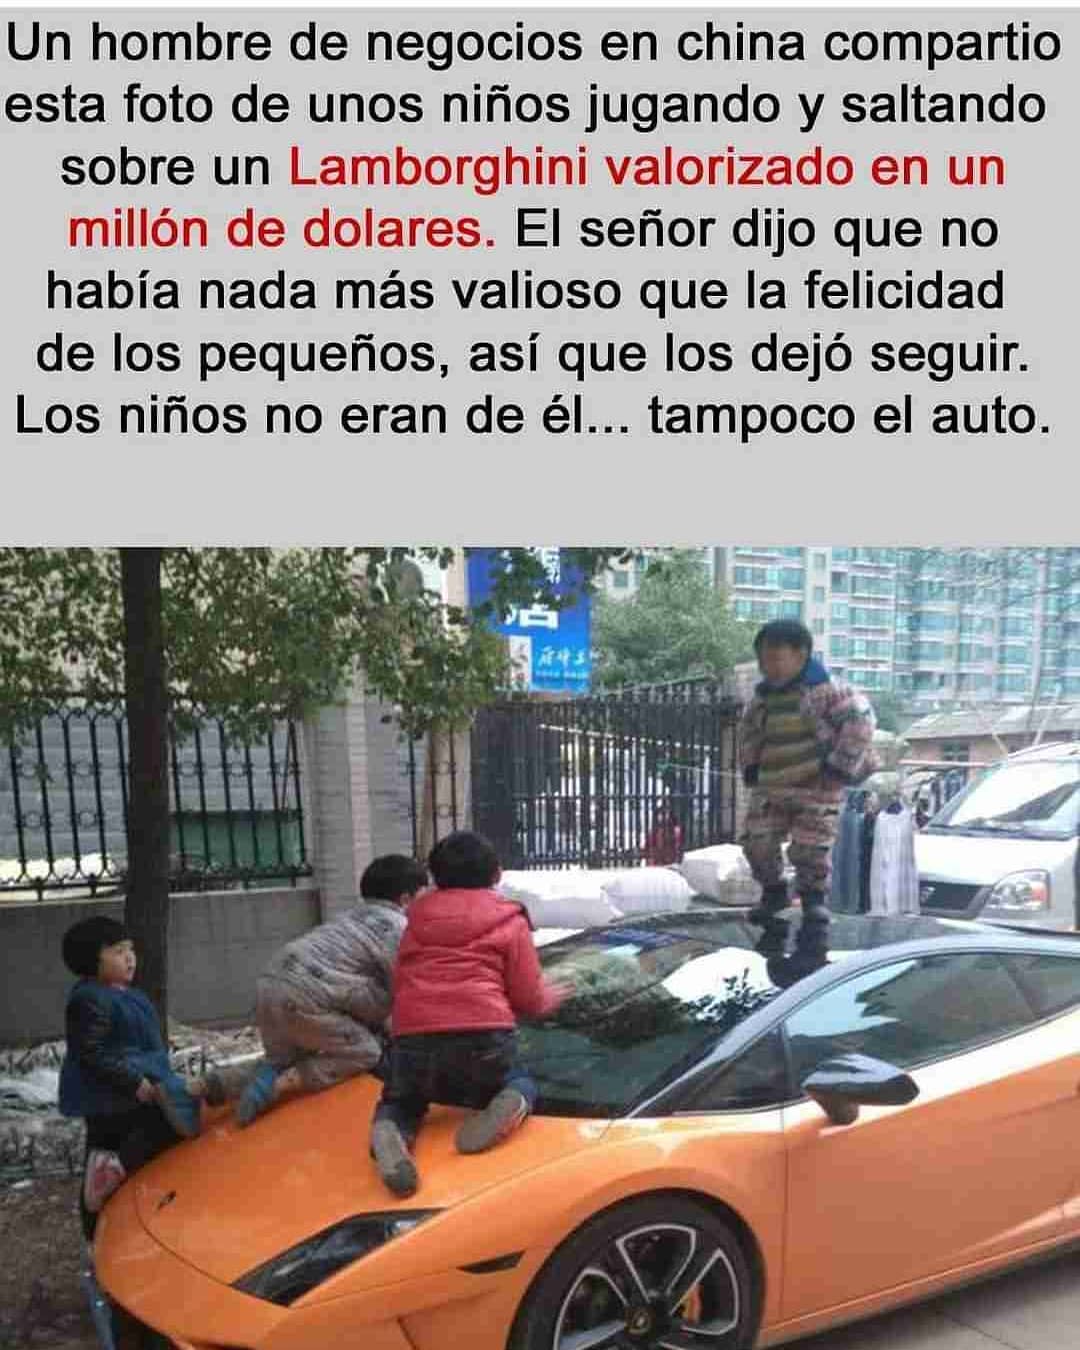 Un hombre de negocios en china compartió esta foto de unos niños jugando y saltando sobre un Lamborghini valorizado en un millón de dolares. El señor dijo que no había nada más valioso que la felicidad de los pequeños, así que los dejó seguir. Los niños no eran de él... tampoco el auto.